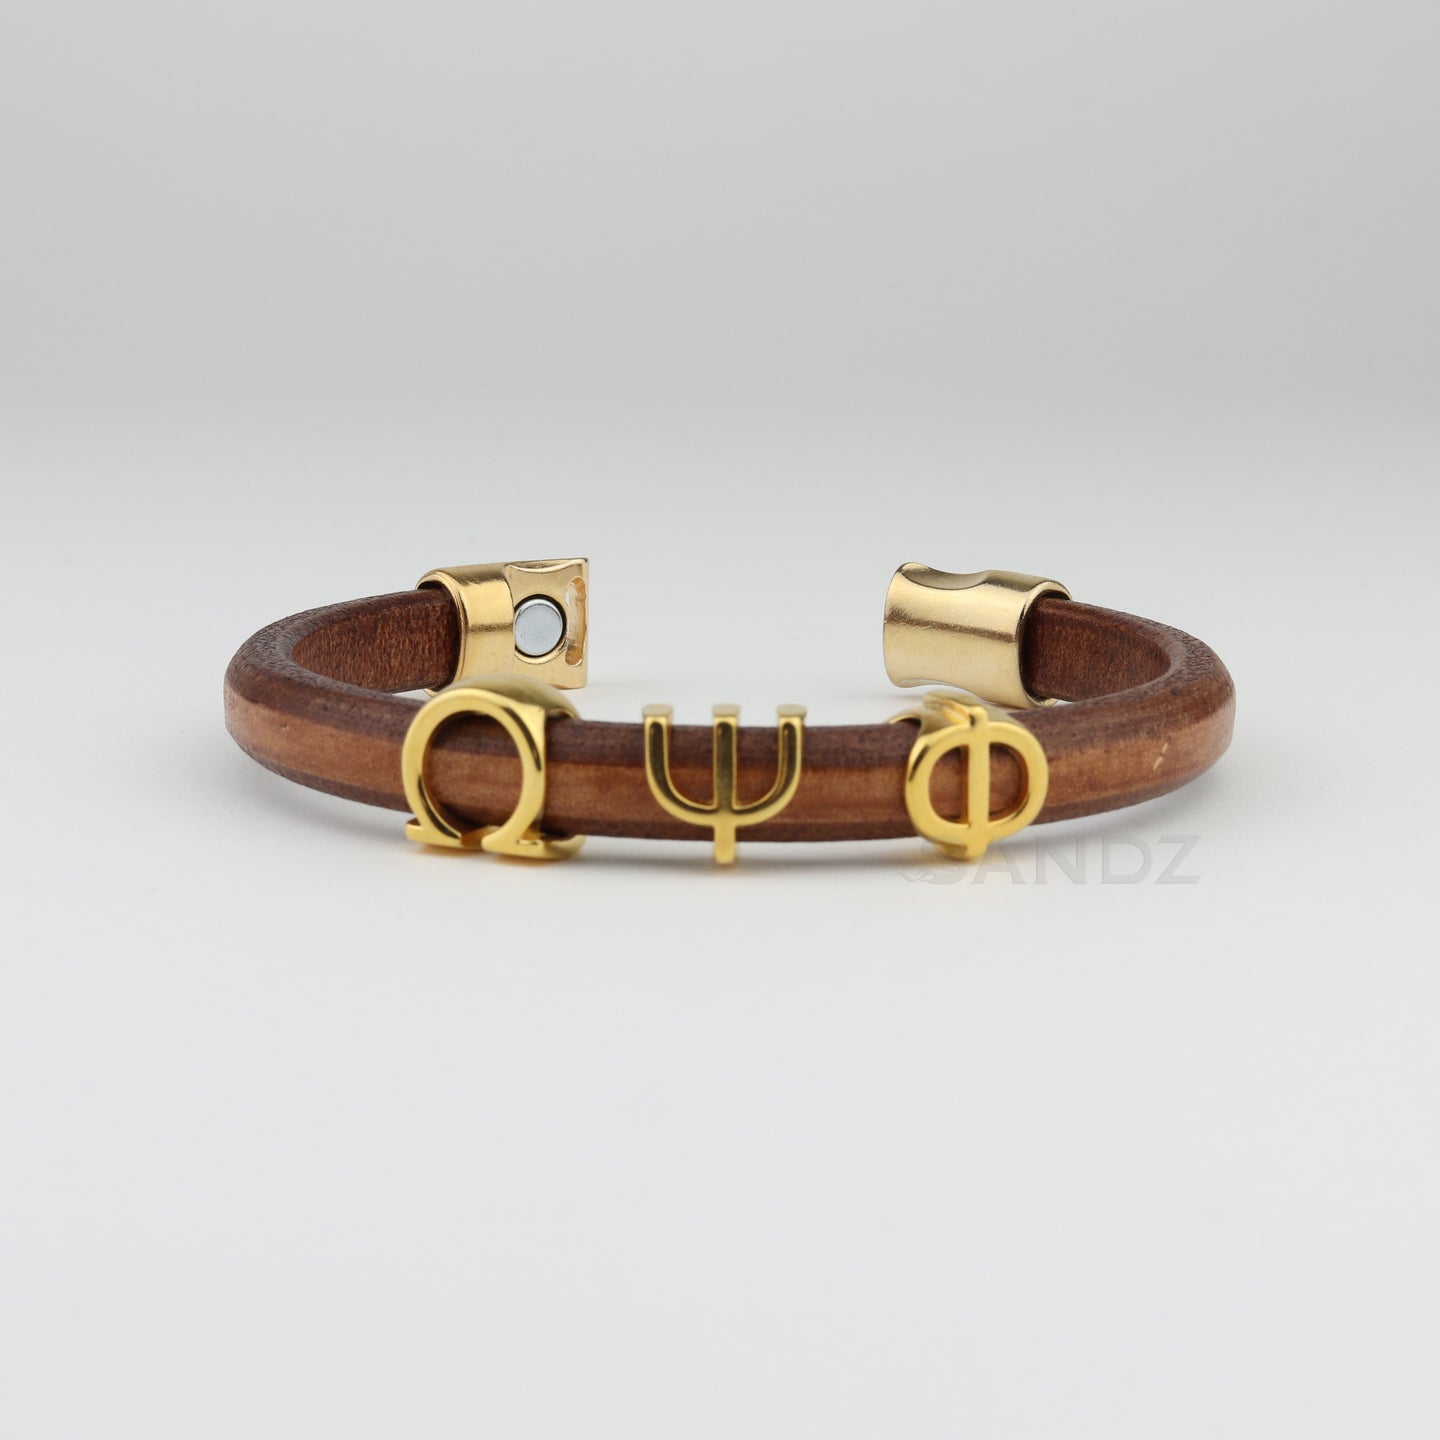 Leather Omega Psi Phi bracelet with gold plated greek letters ΩΨΦ, Omega Psi Phi gifts, Da Bruhz, Omega Man www.thesandz.com